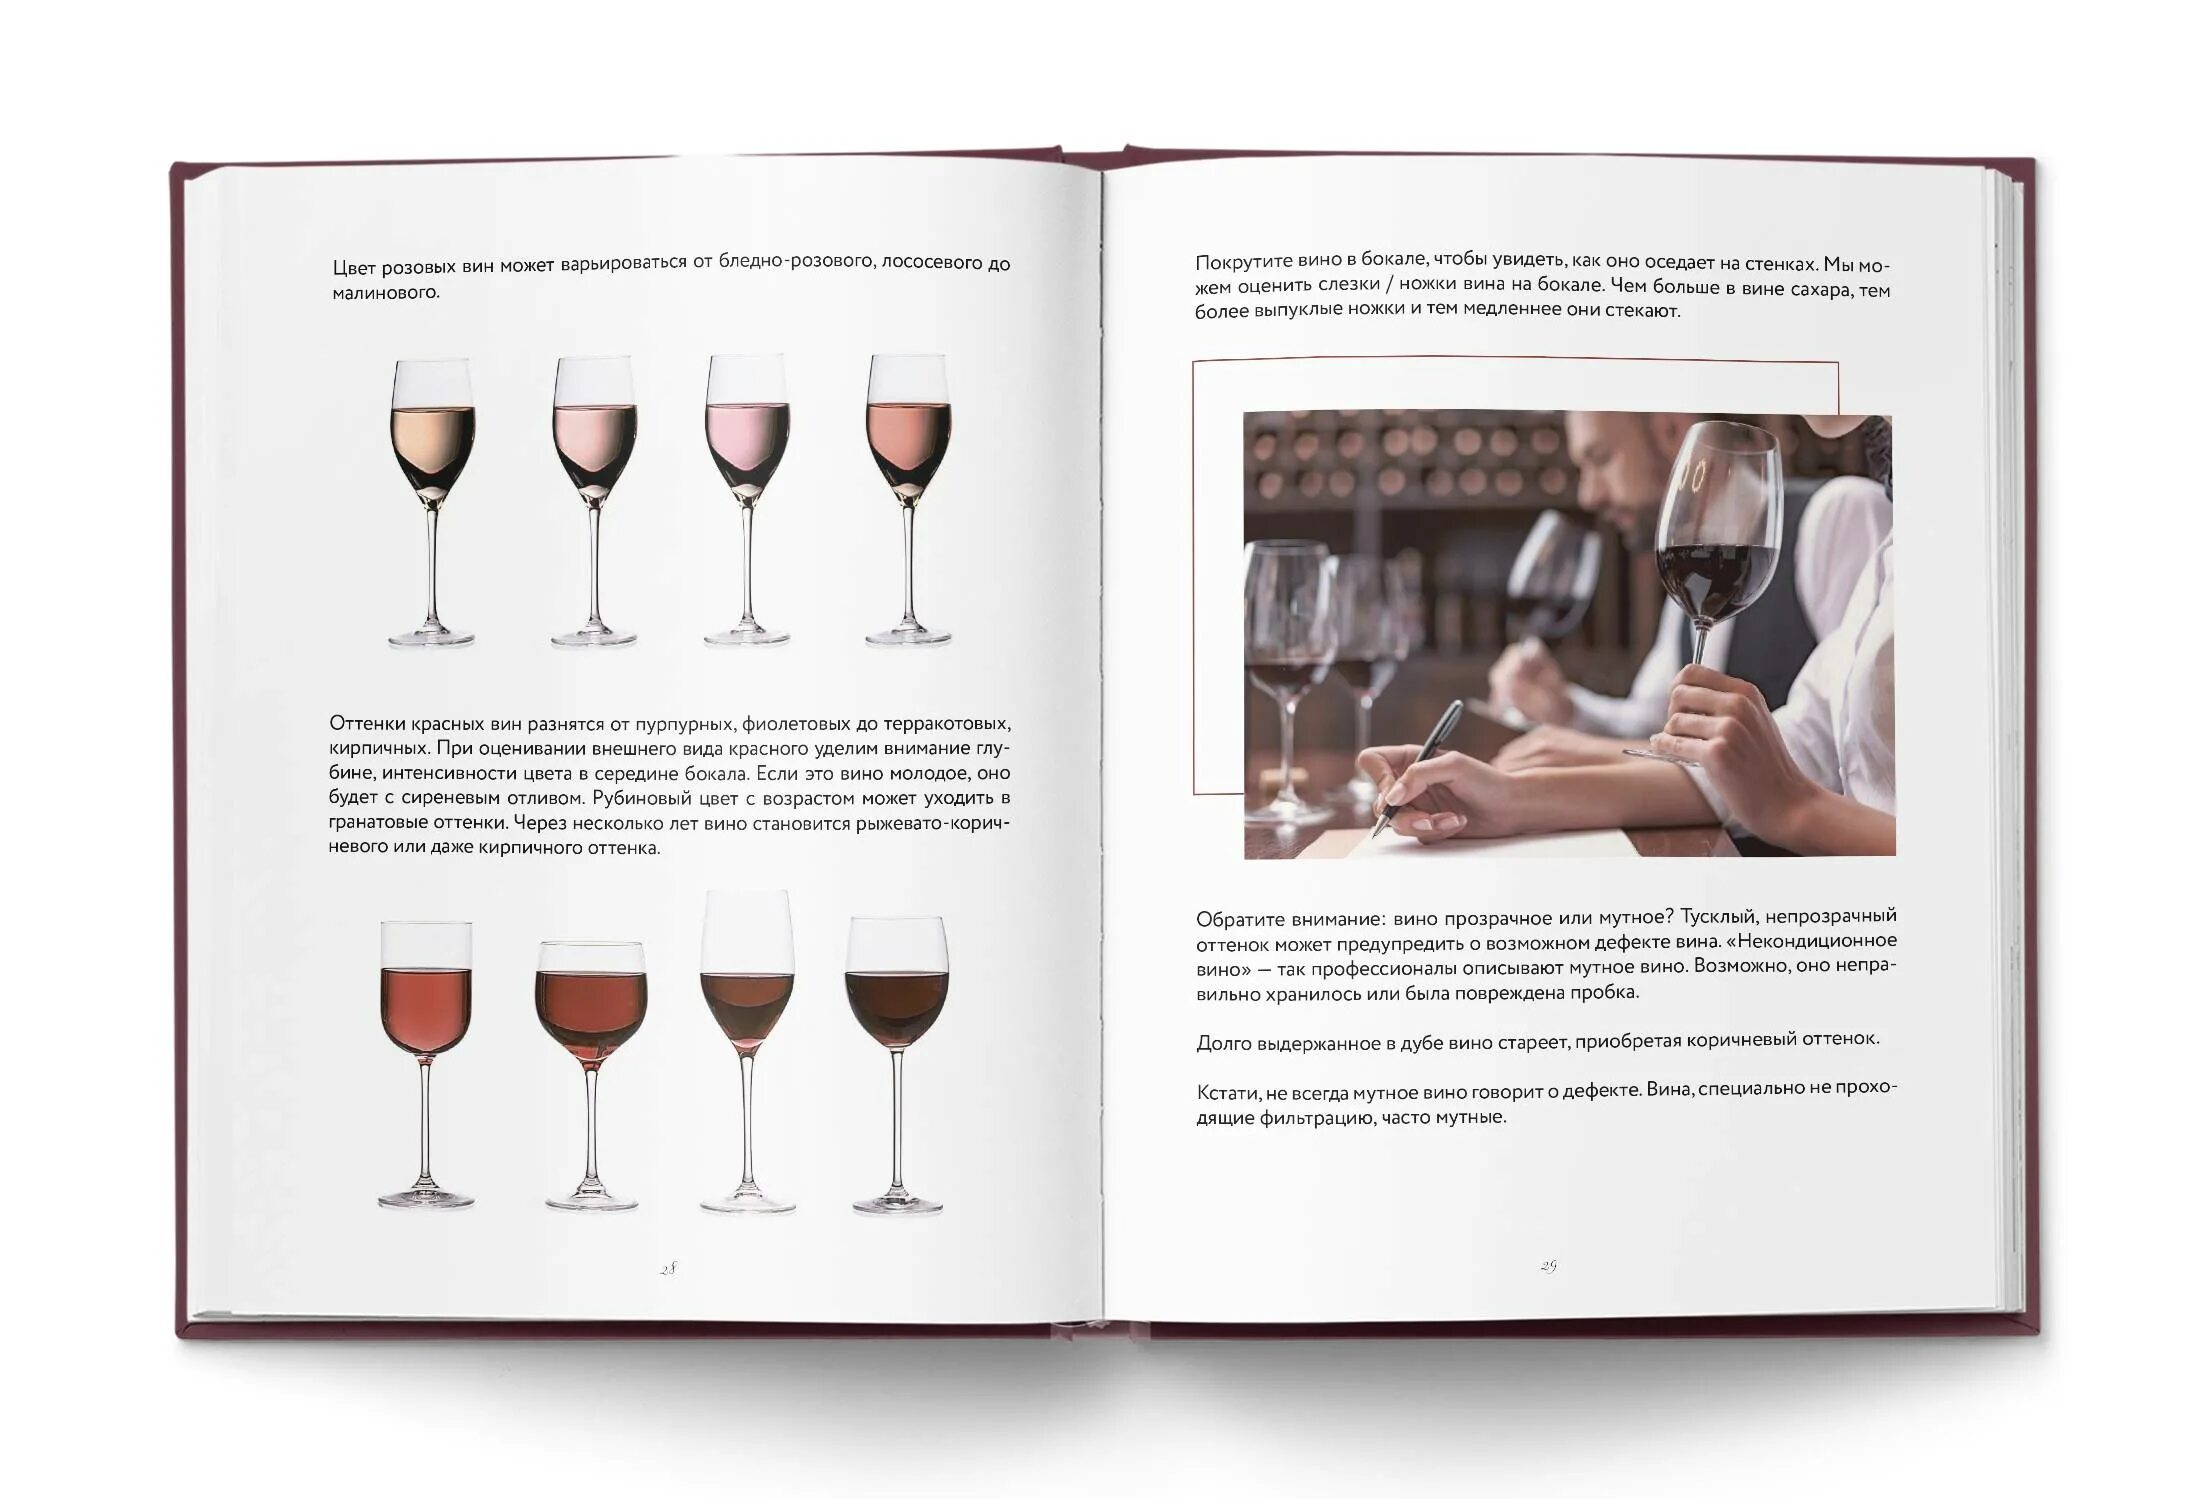 Язык в вине. Книги о вине и виноделии. Сам себе сомелье книга. Книги о французских винах. Как научиться разбираться в винах.